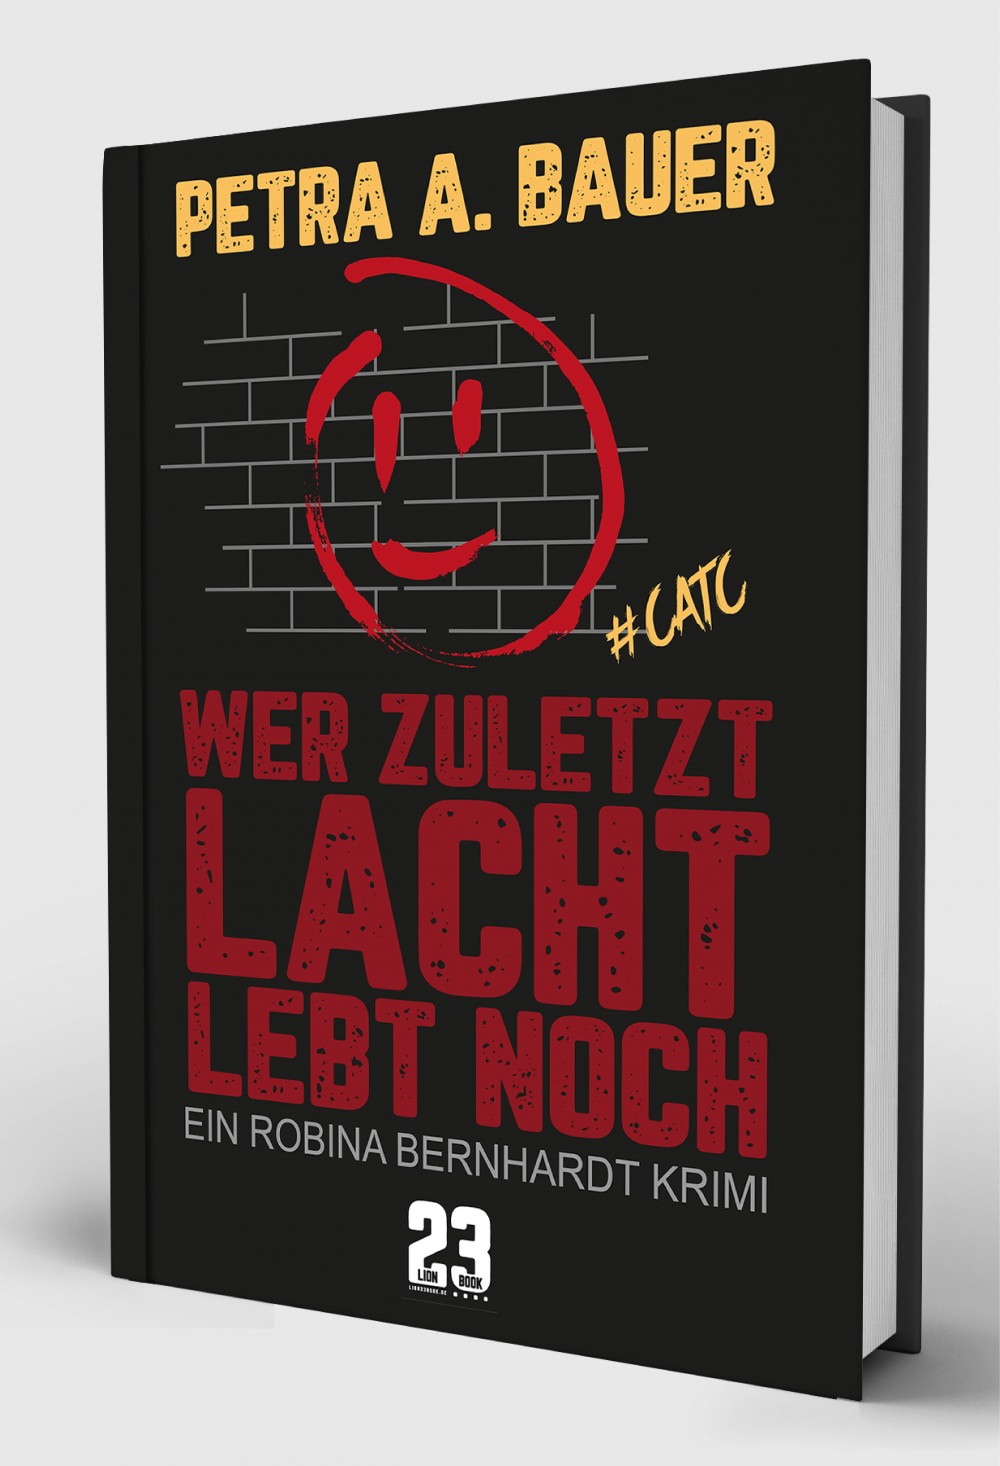 Wer zuletzt lacht, lebt noch. Krimi von Petra A. Bauer. Völlig überarbeitete Neuausgabe 2018.